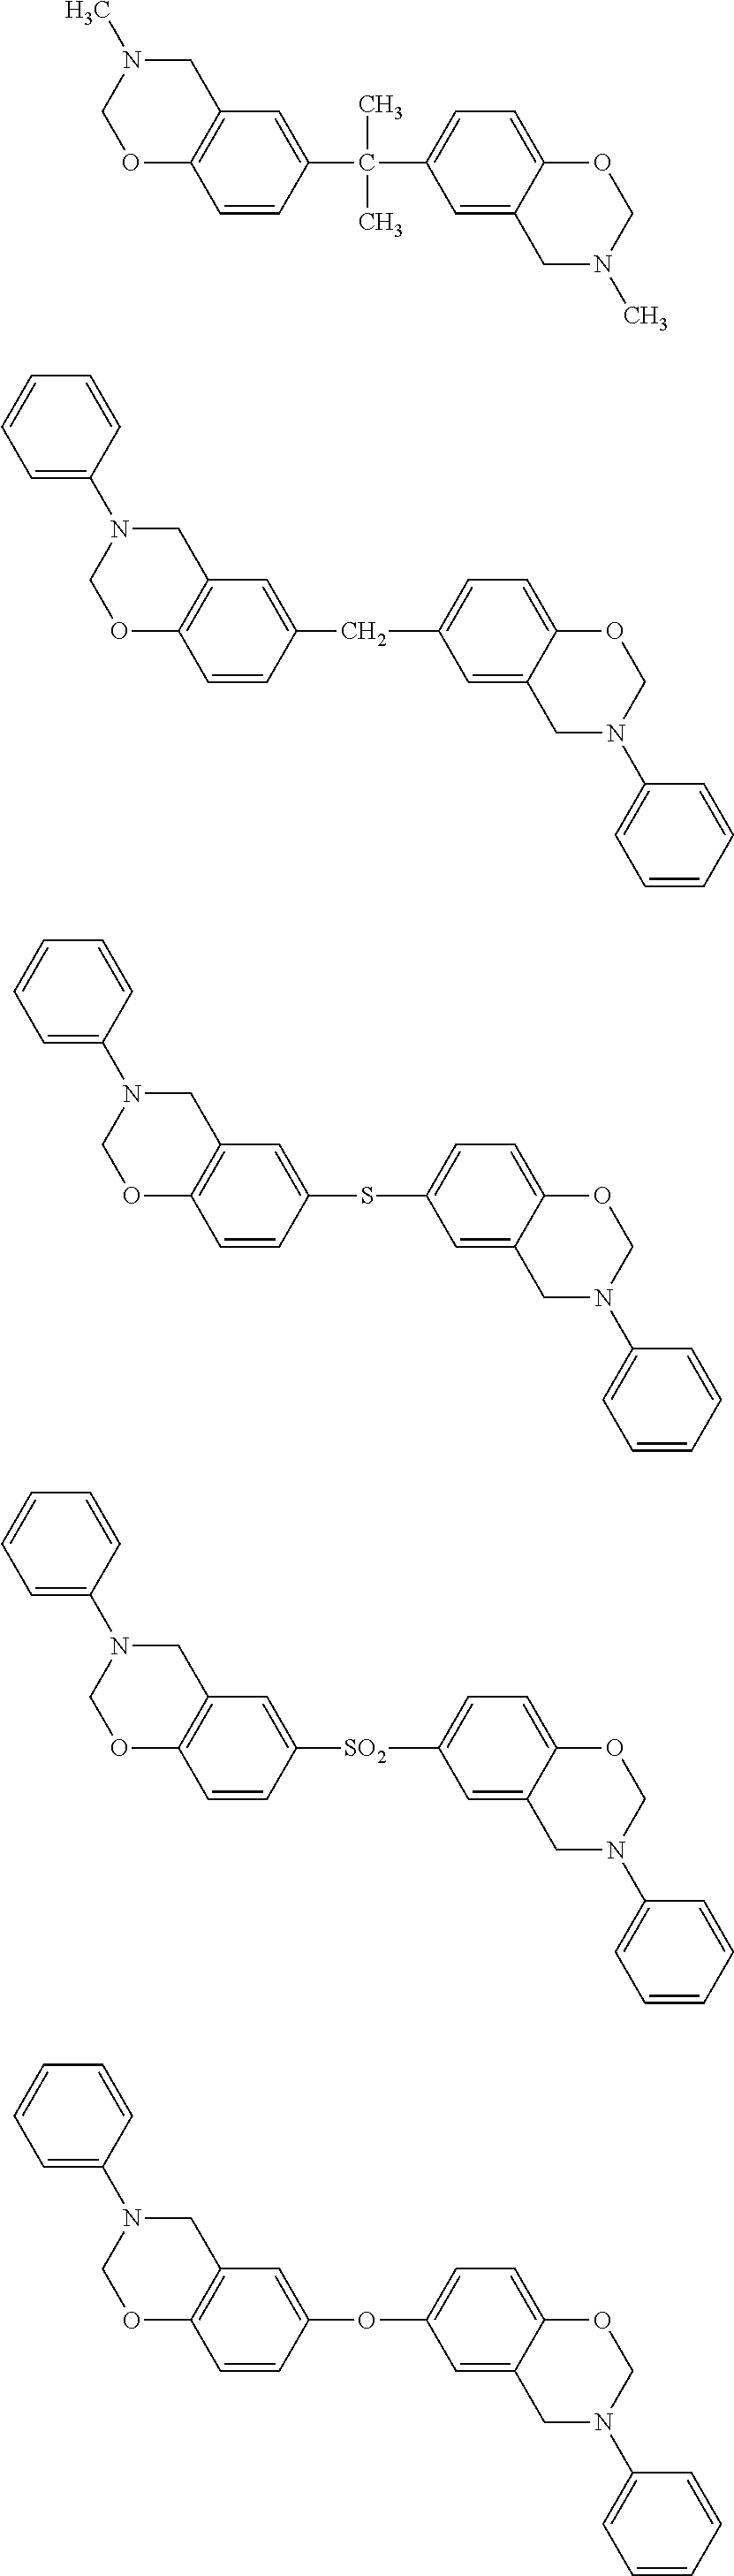 Benzoxazine resin composition